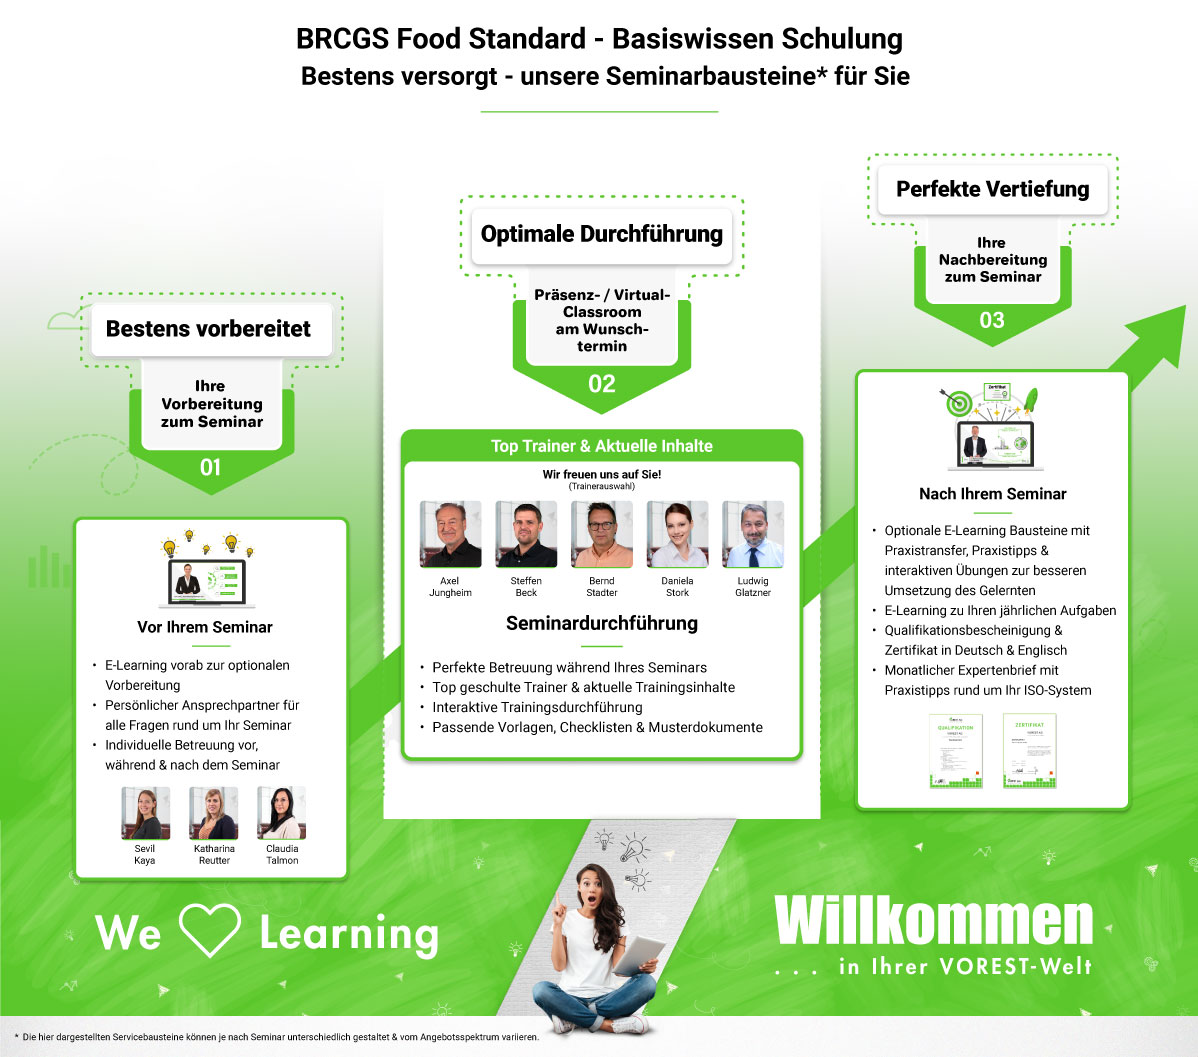 BRCGS Food Standard - Basiswissen Schulung